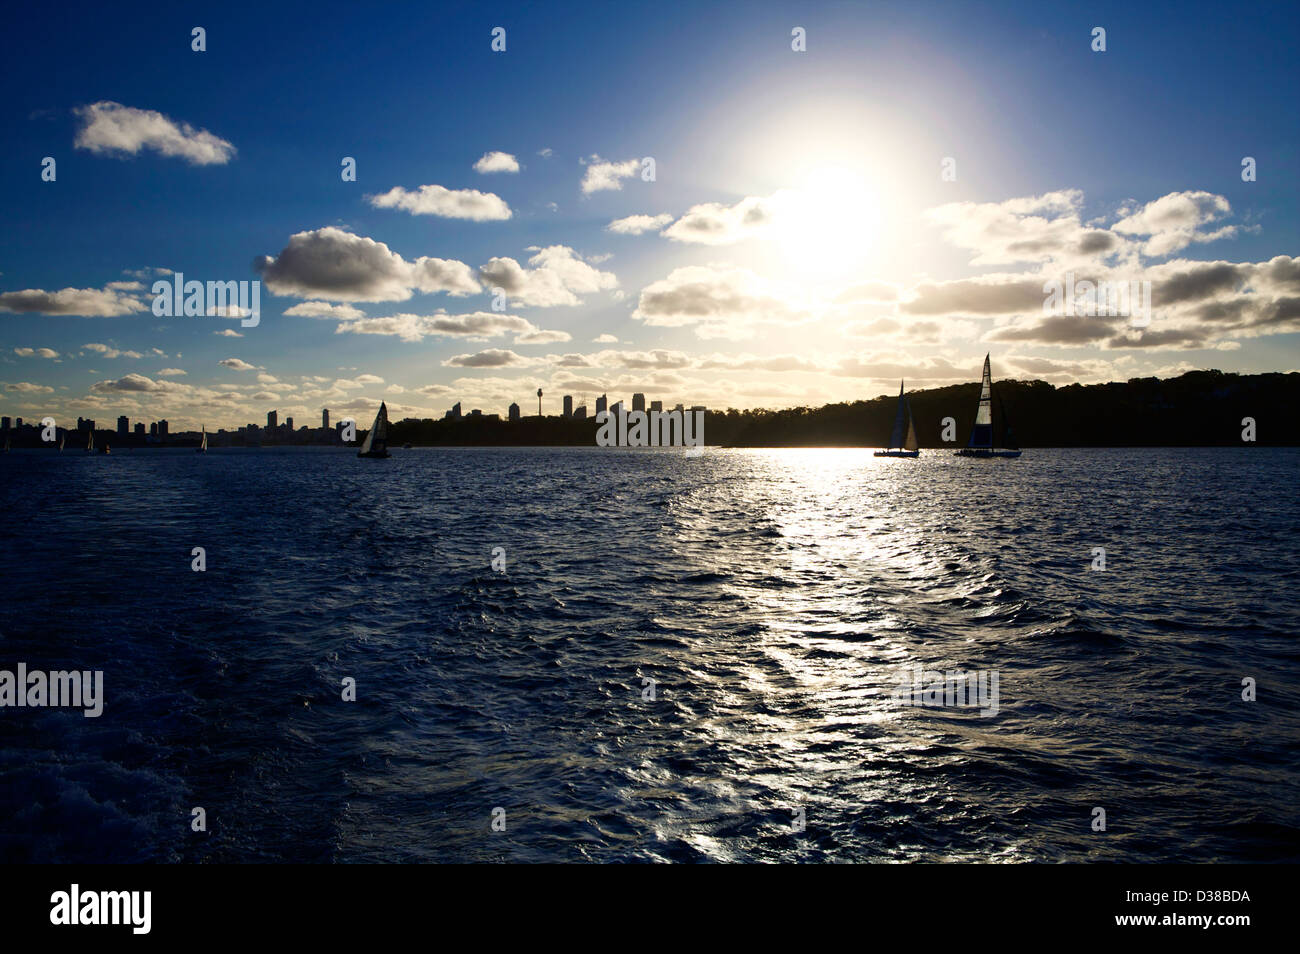 Il Porto di Sydney skyline in silhouette con yacht a vela in acqua al tramonto Foto Stock